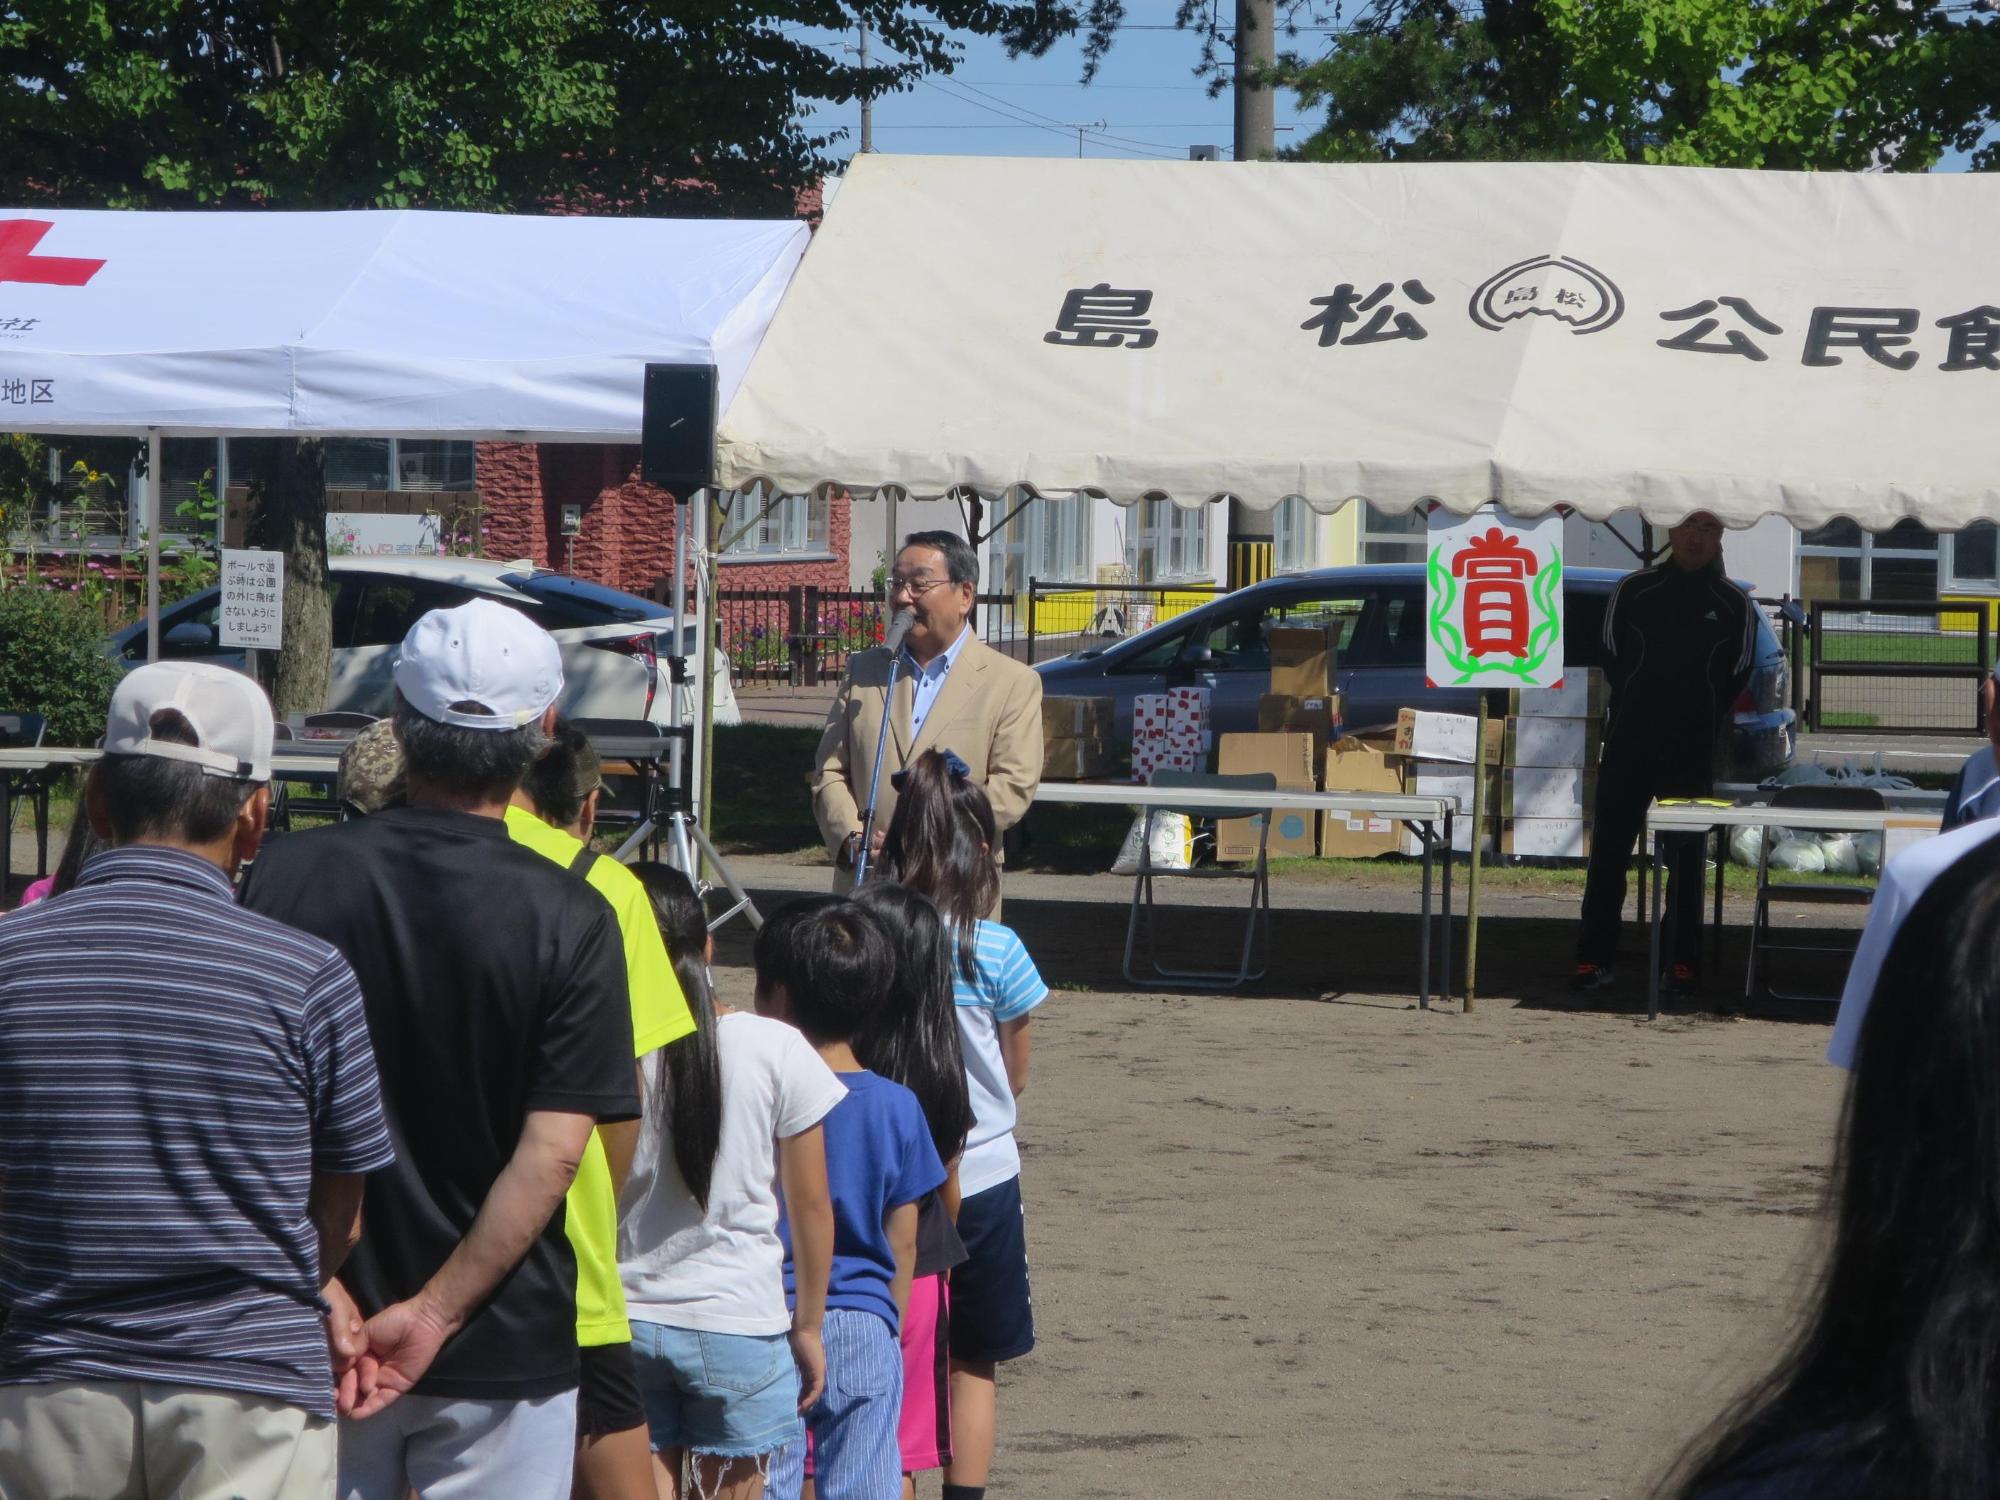 「第61回島松公民館運動会」にて挨拶をしている原田市長の写真